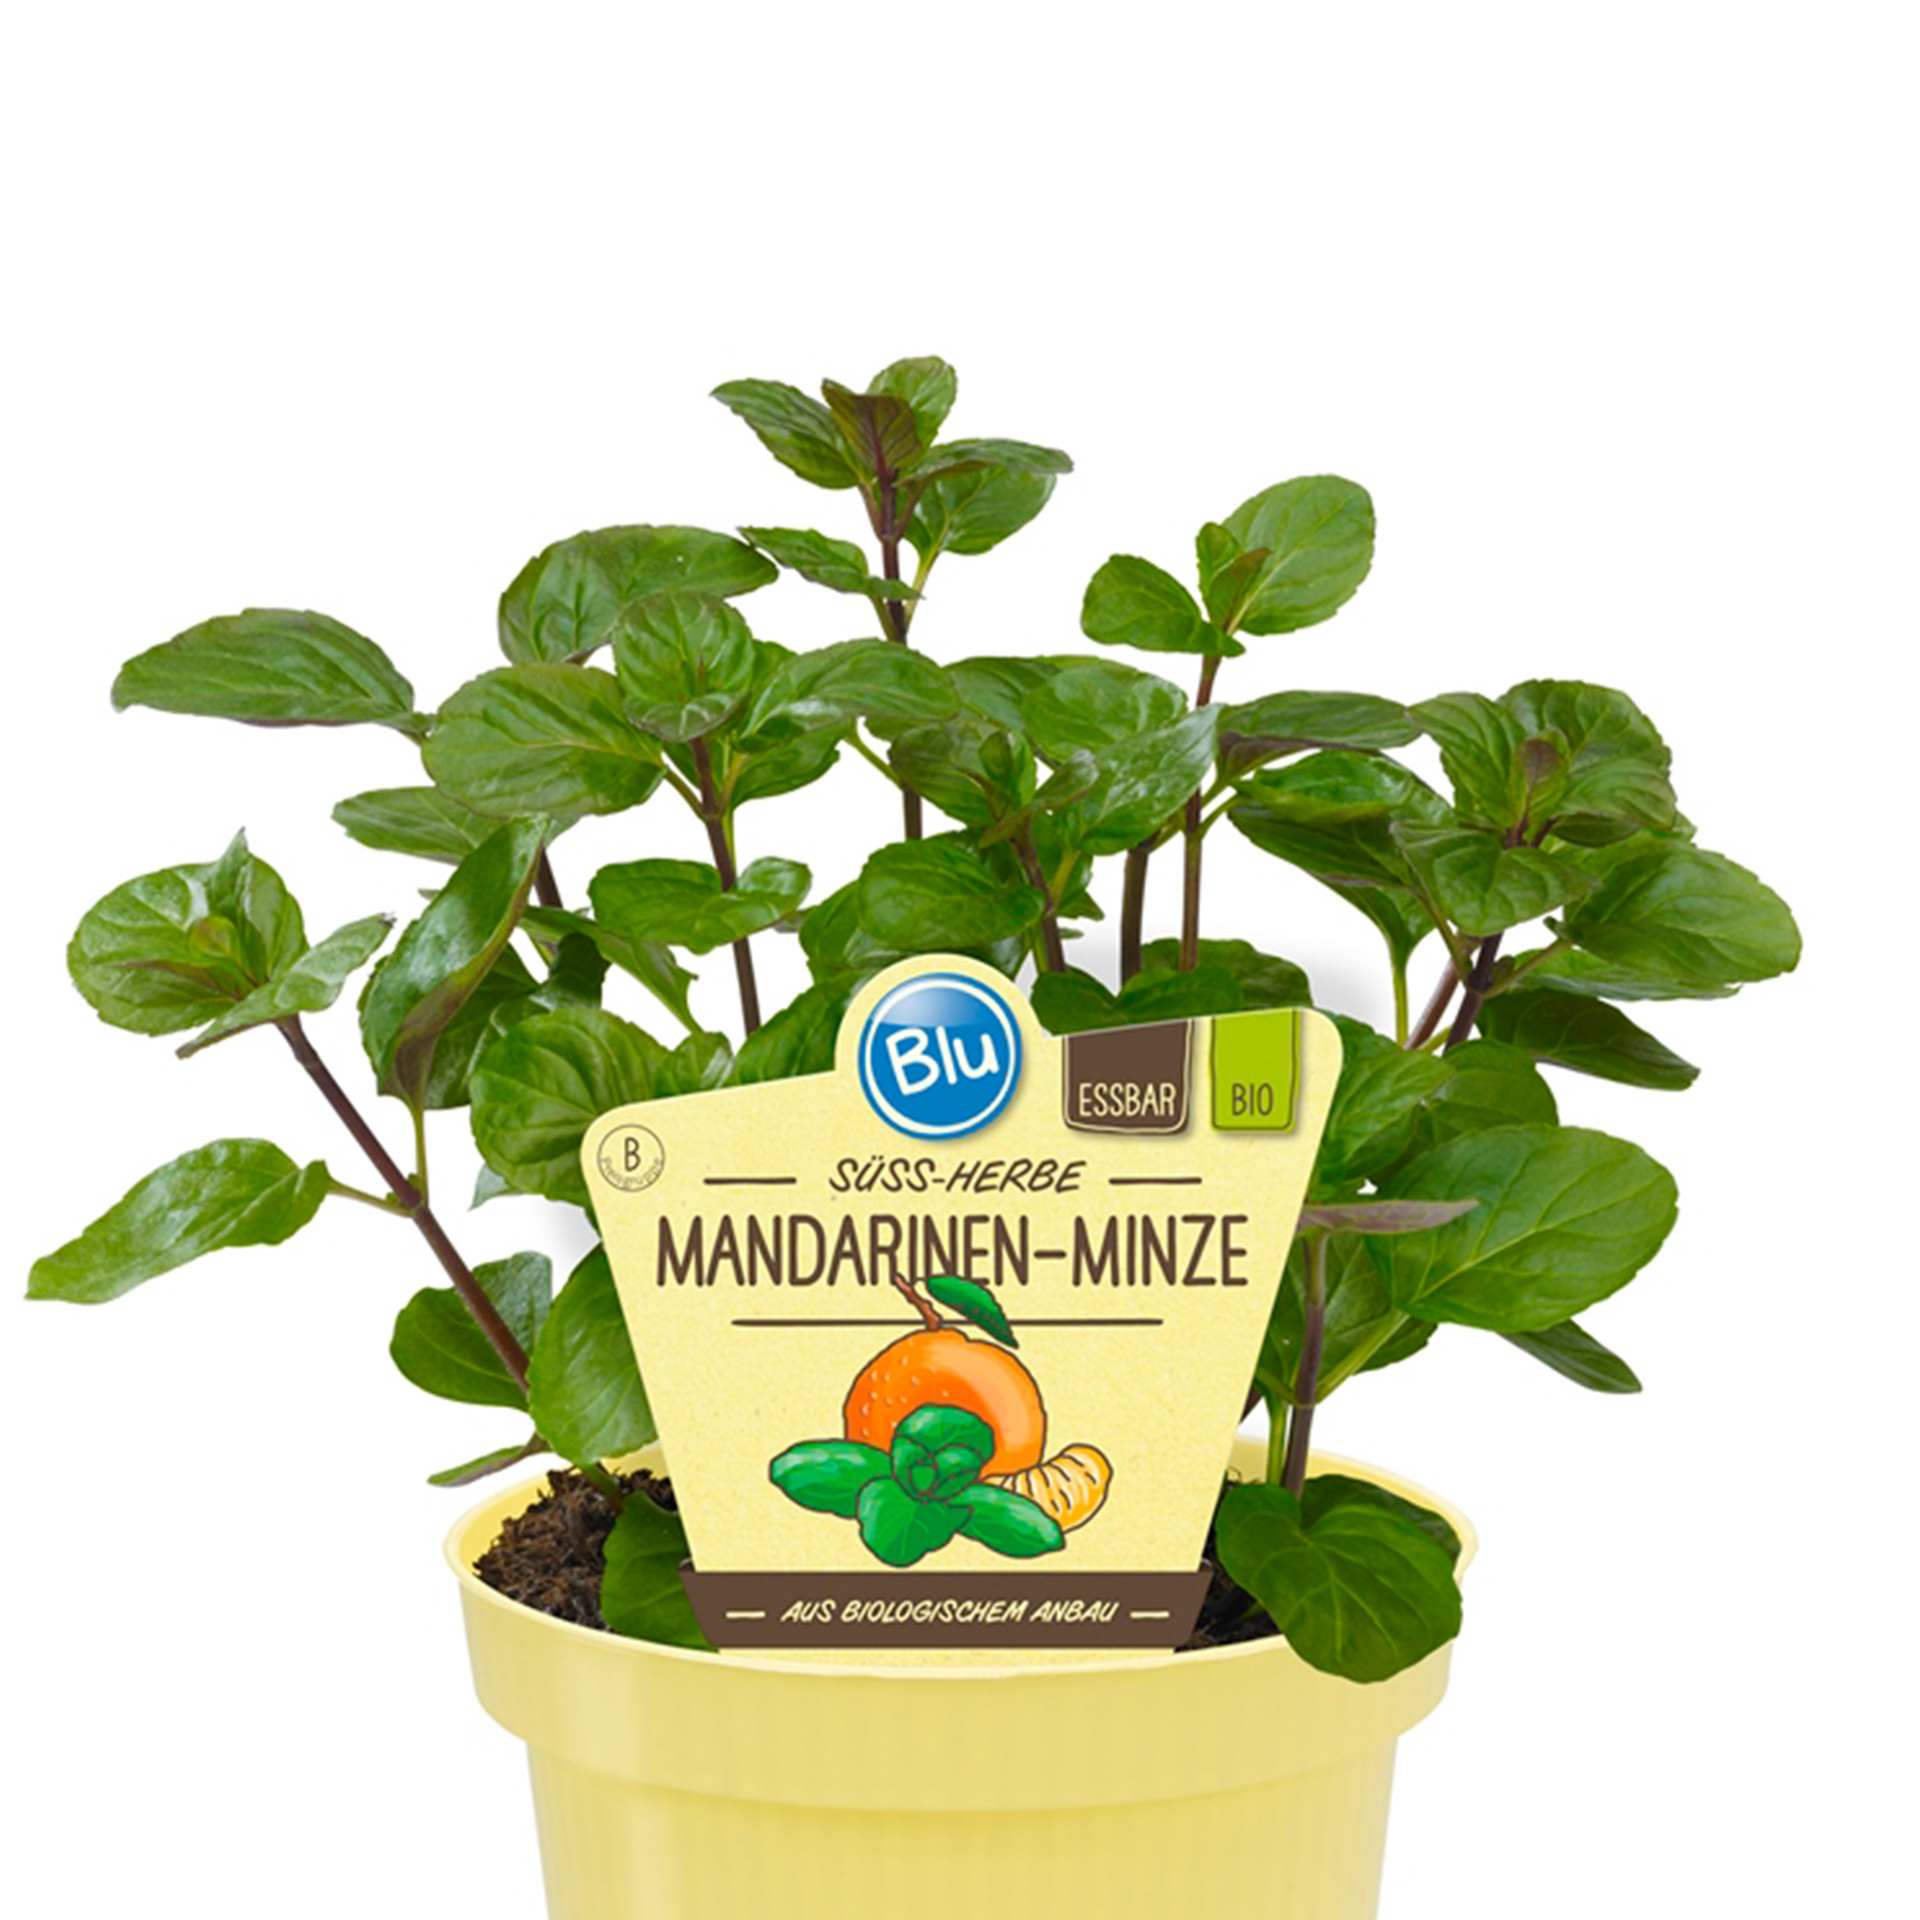 Mandarinen-Minze im Pflanztopf mit Pflanzenstecker